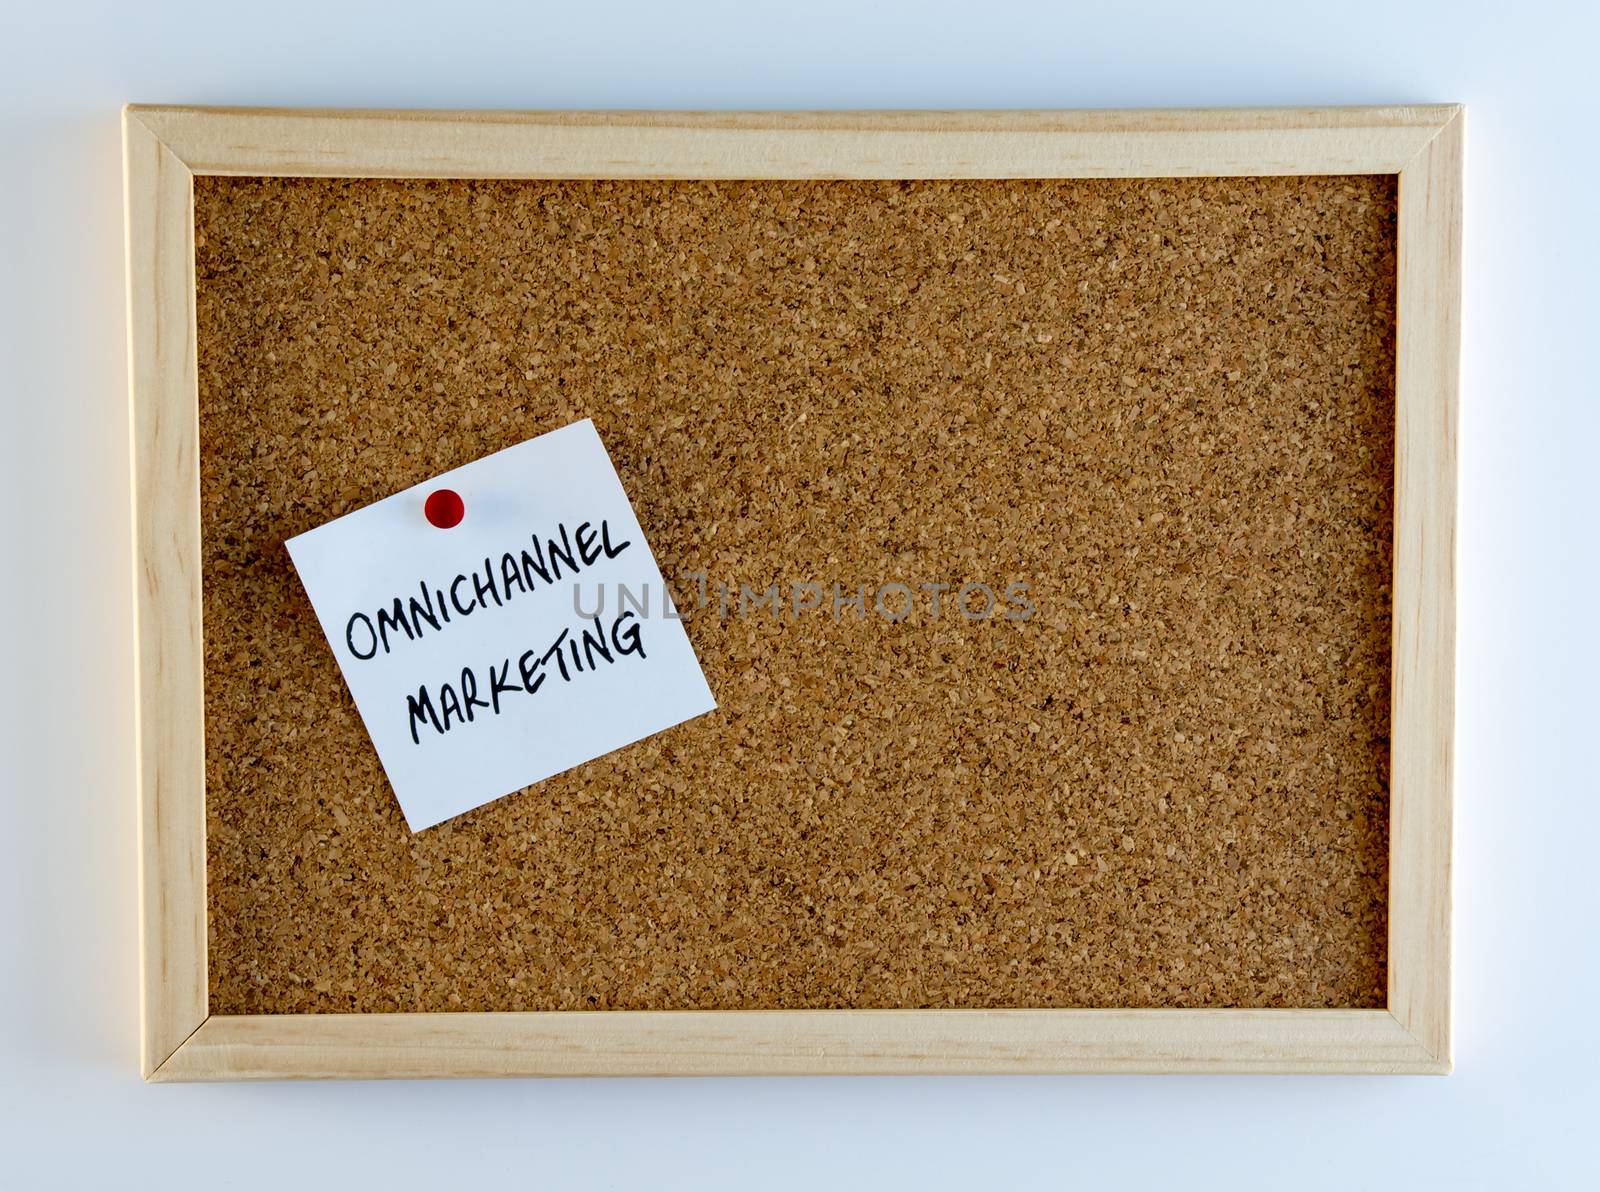 The words, "Omnichannel marketing" pinned on cork bulletin board